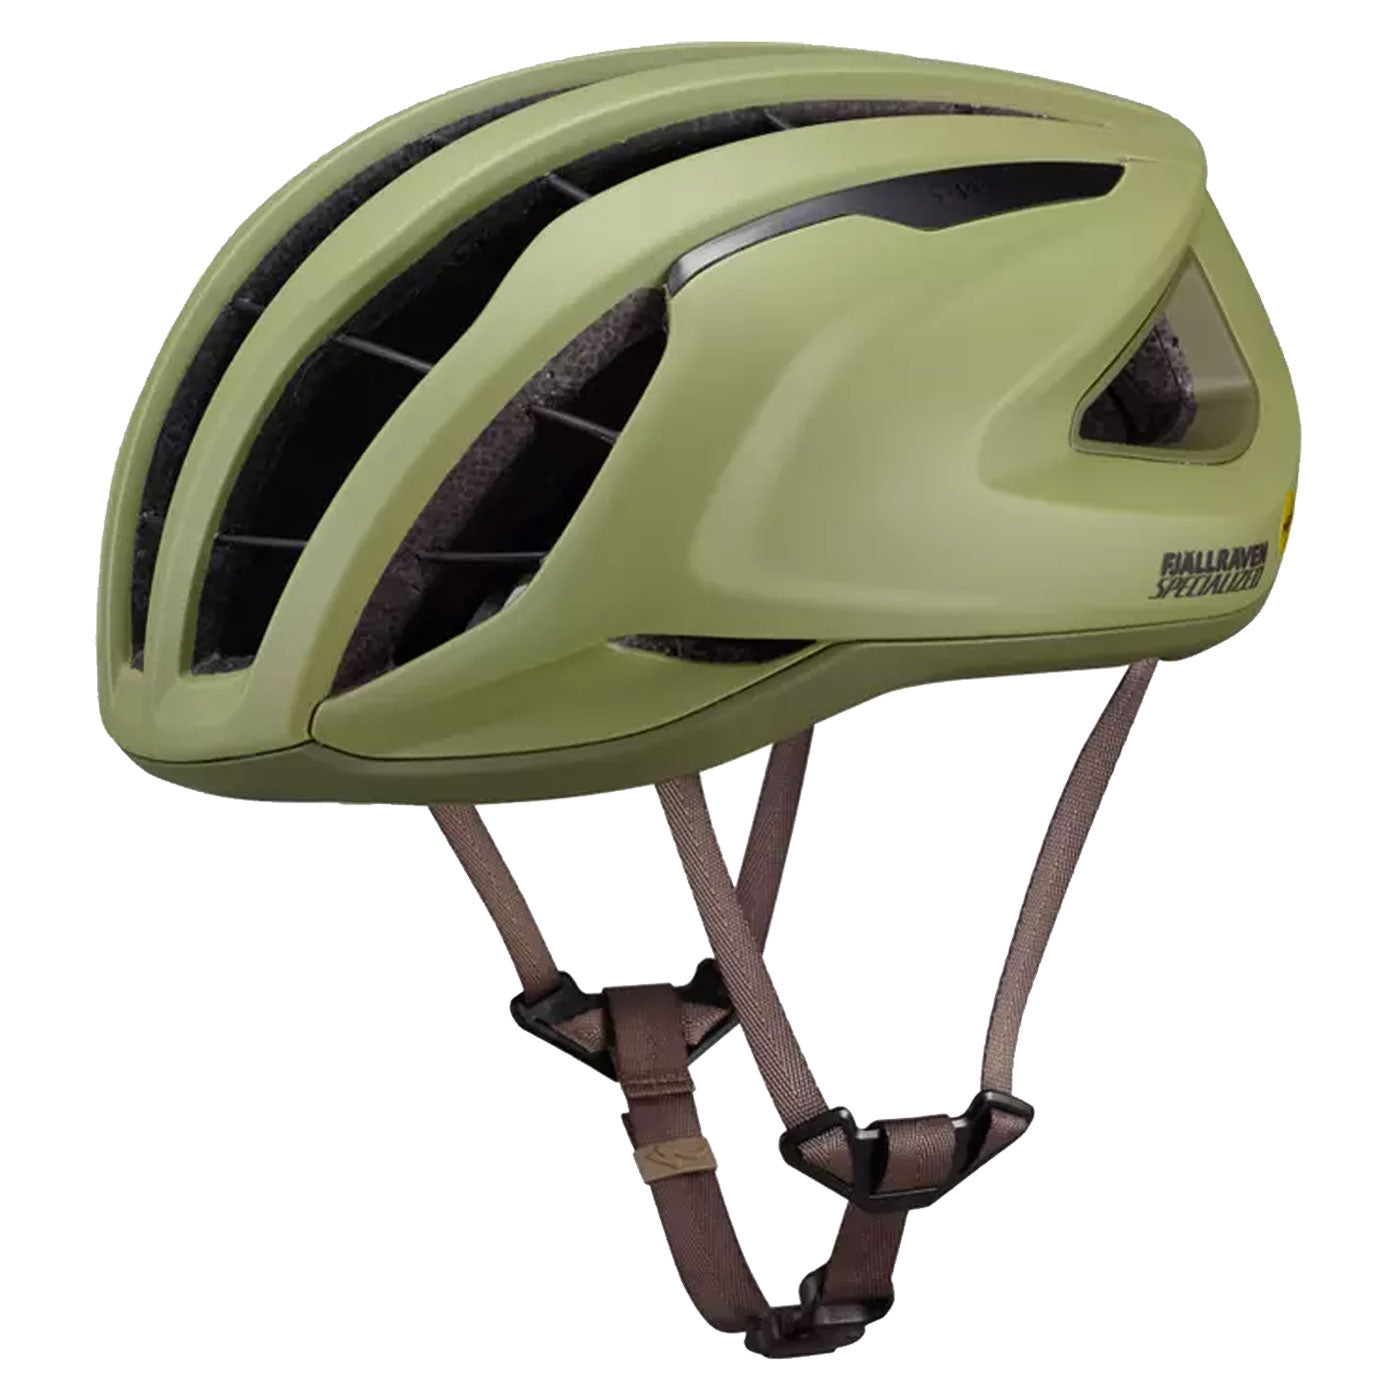 Specialized Prevail 3 helmet - Fjällräven green